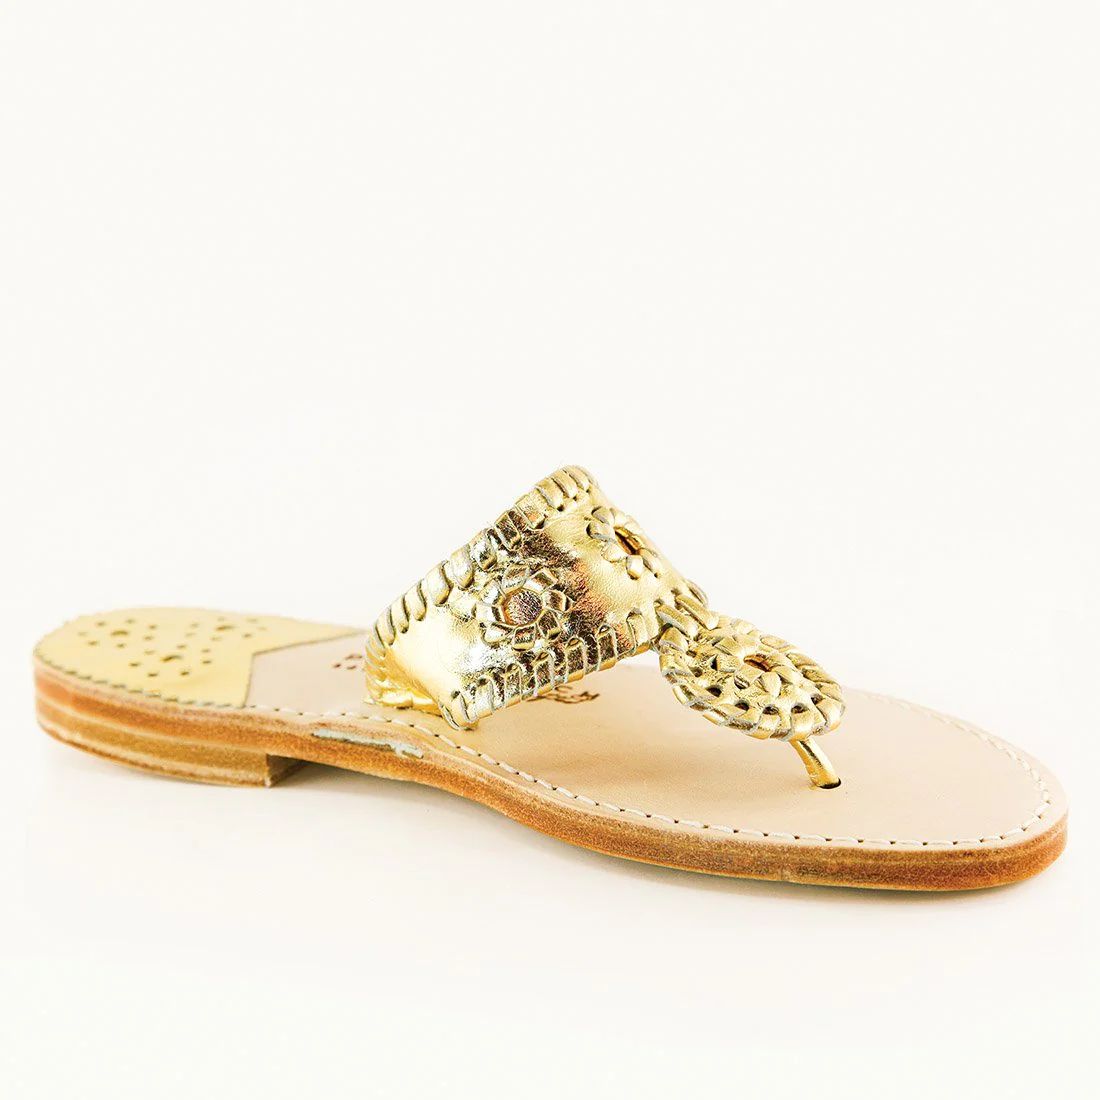 PB Gold / Gold | Palm Beach Sandals